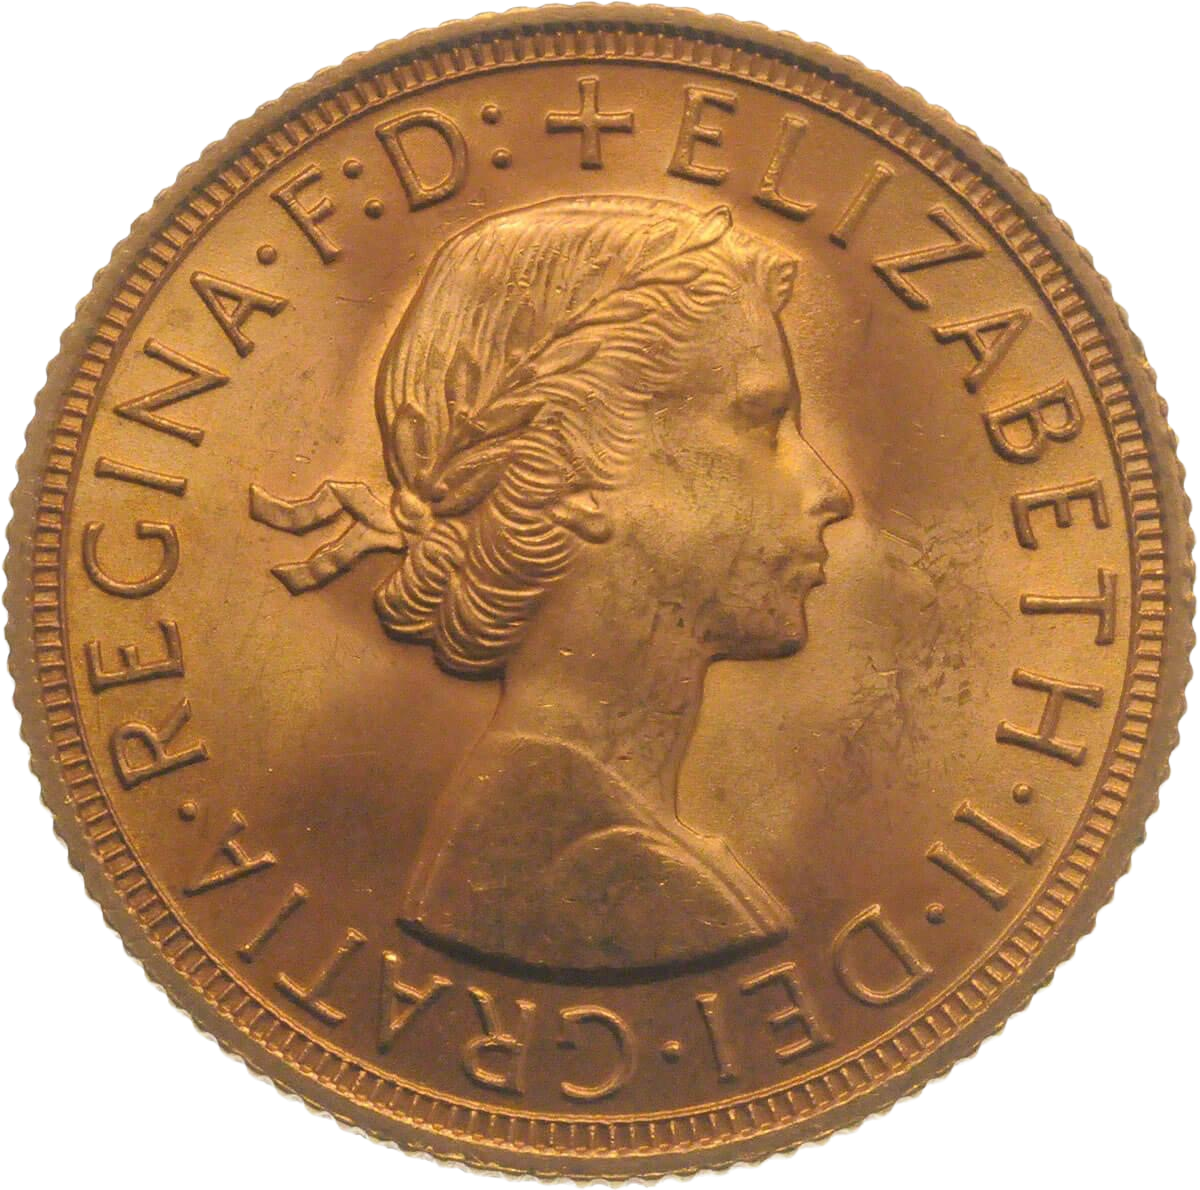 Gold Sovereign - Elizabeth II - First Portrait - 1957-1968